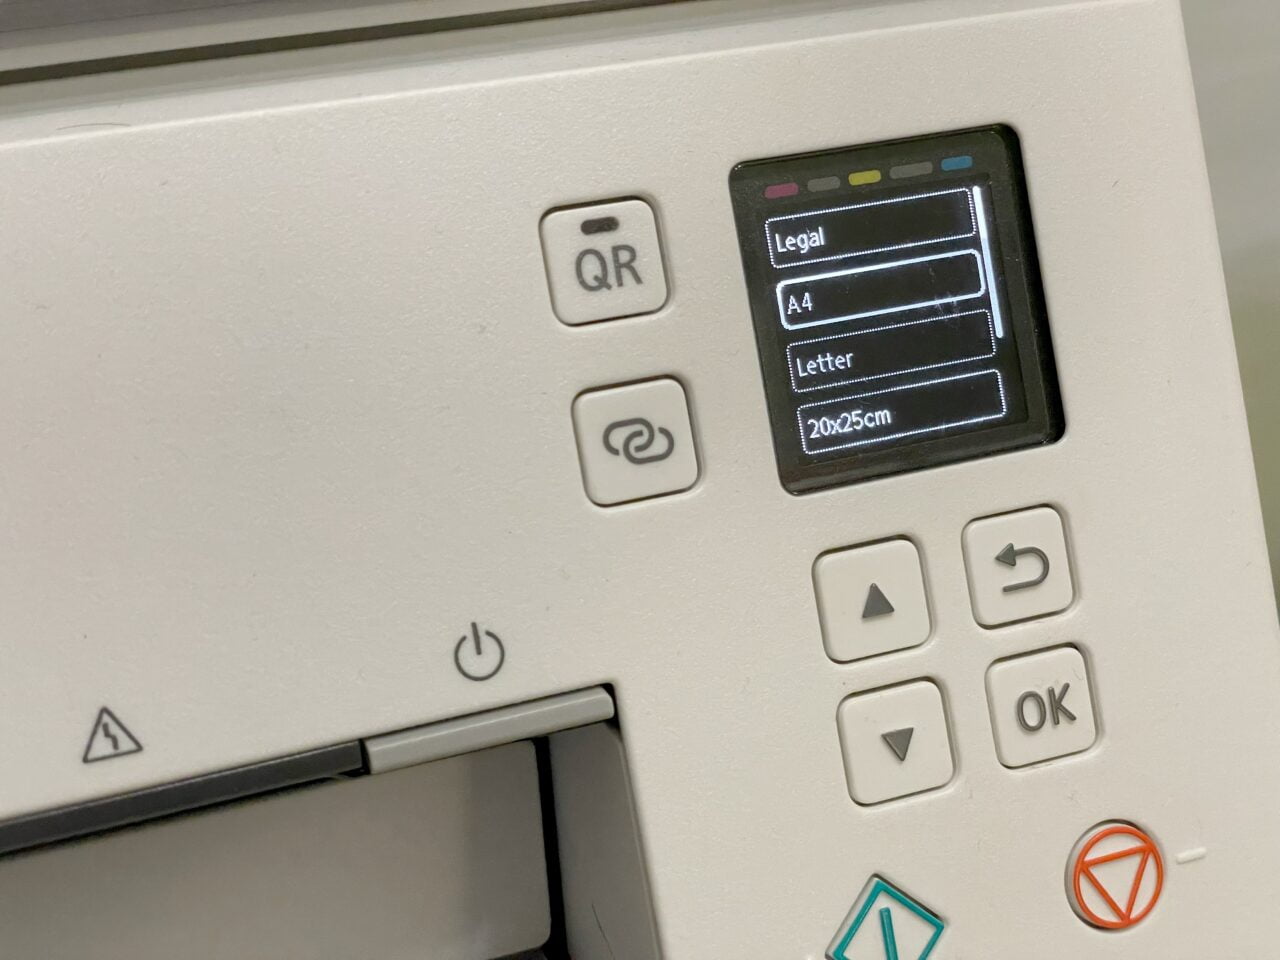 Panel sterowania drukarki z wyświetlaczem LCD pokazującym opcje formatów papieru, w tym Legal, A4 i Letter, oraz przyciskami nawigacyjnymi i potwierdzającymi.